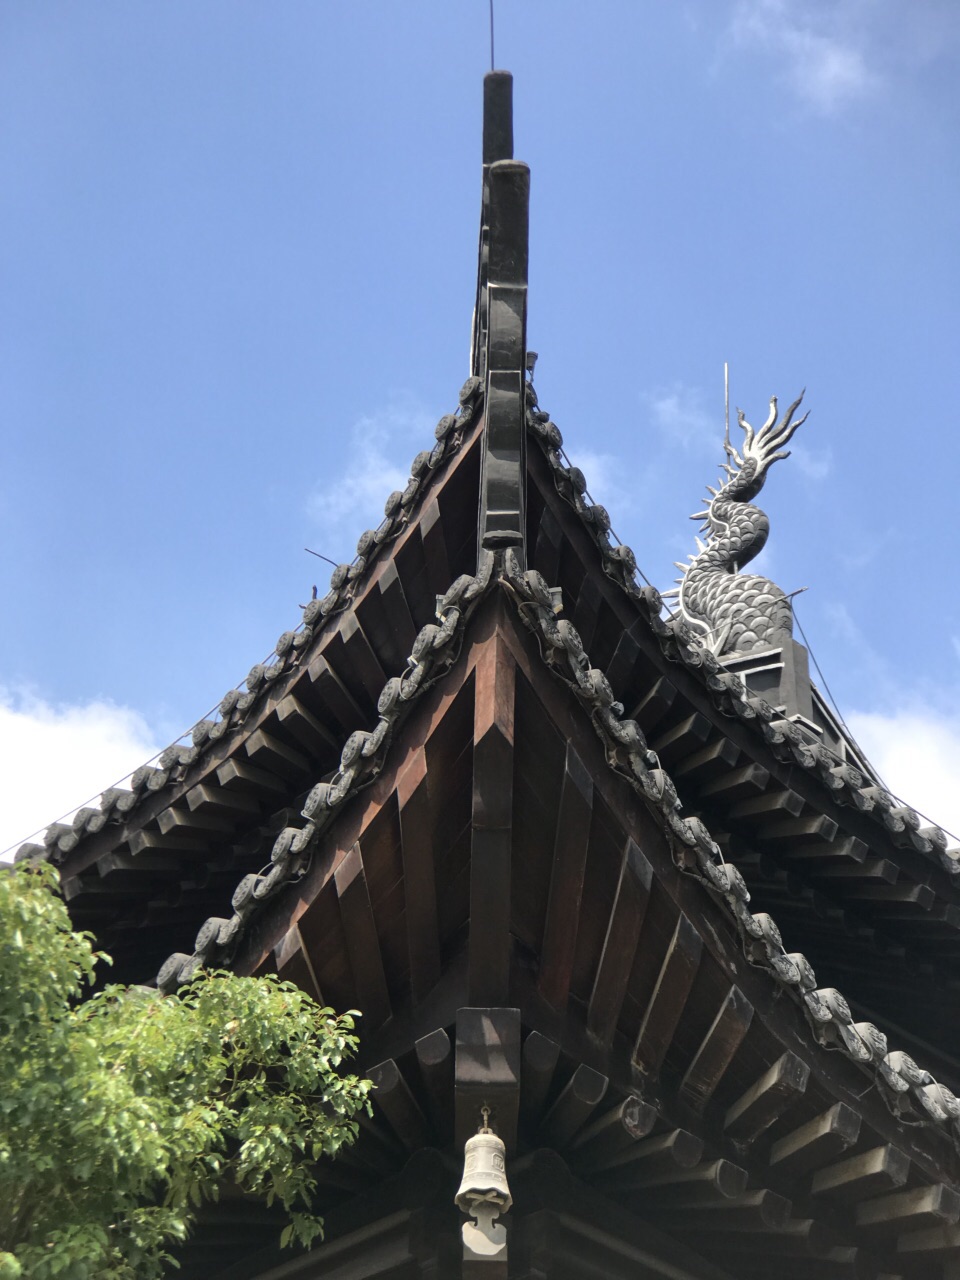 长寿禅寺图片